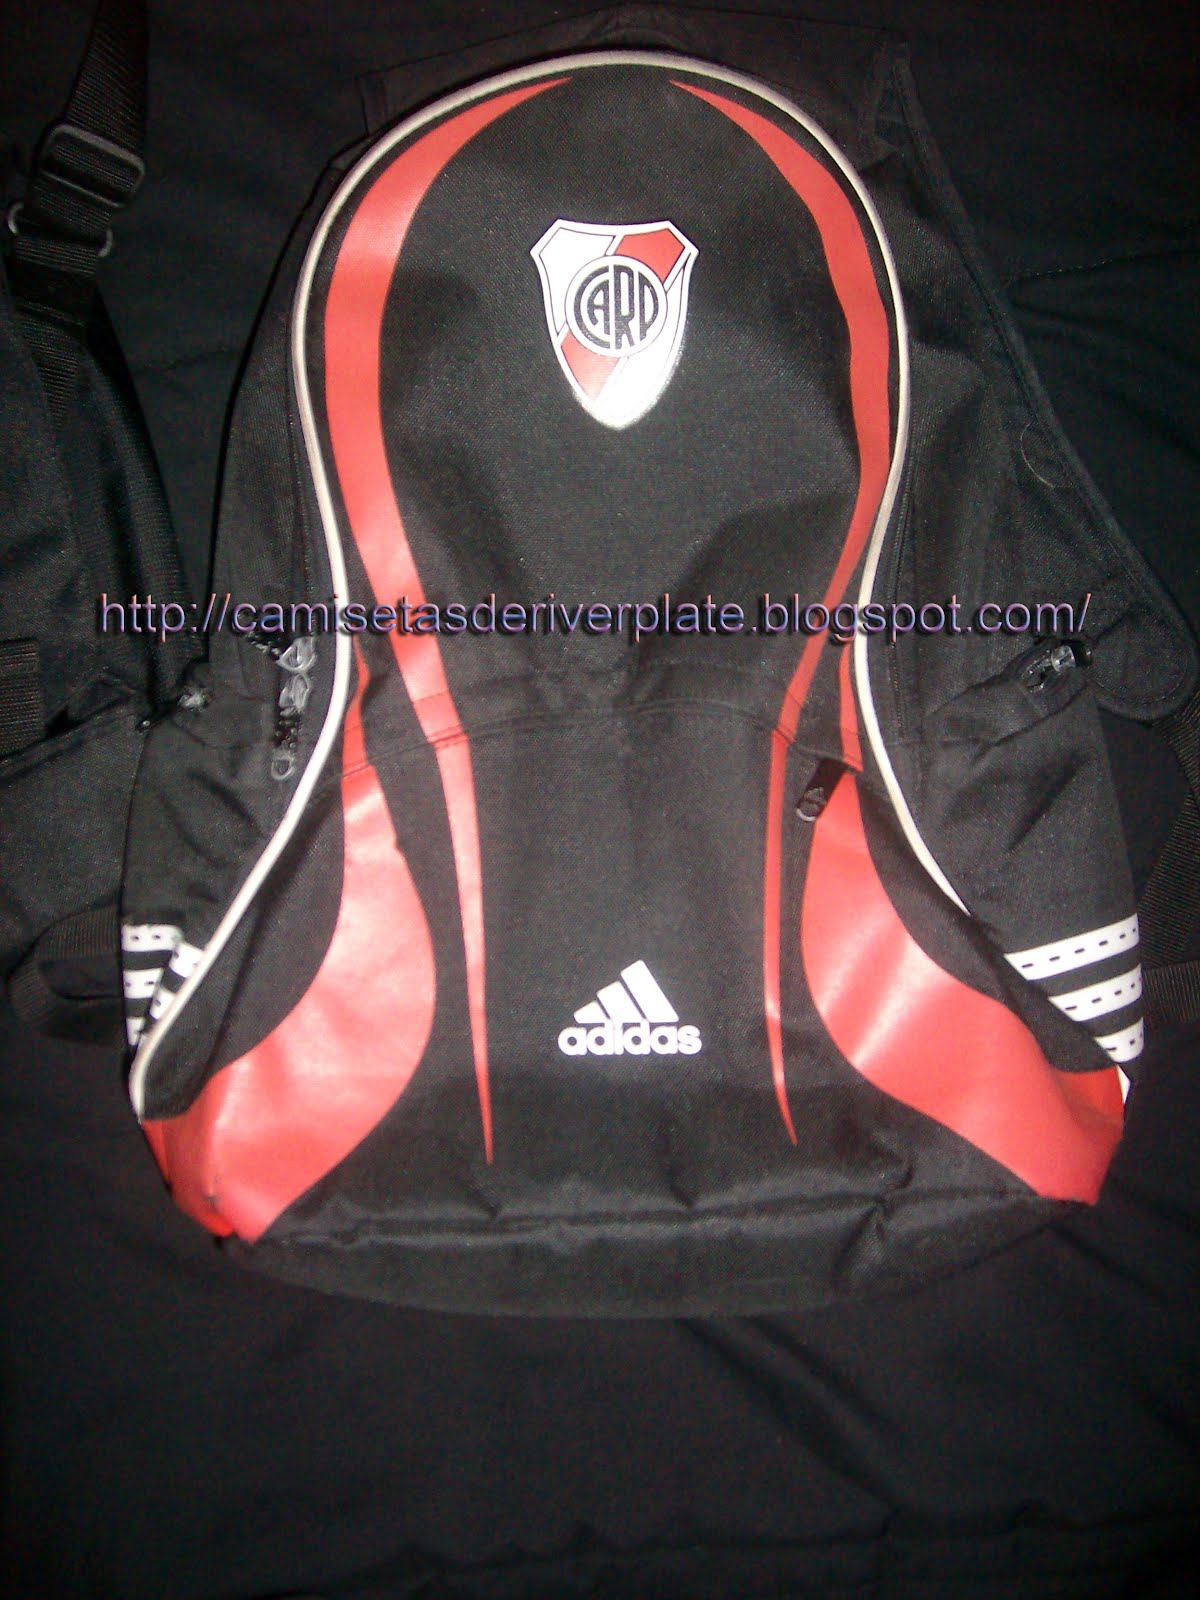 Camisetas de River Plate COLECCION.MILLONARIA: Morral, mochila y botinero